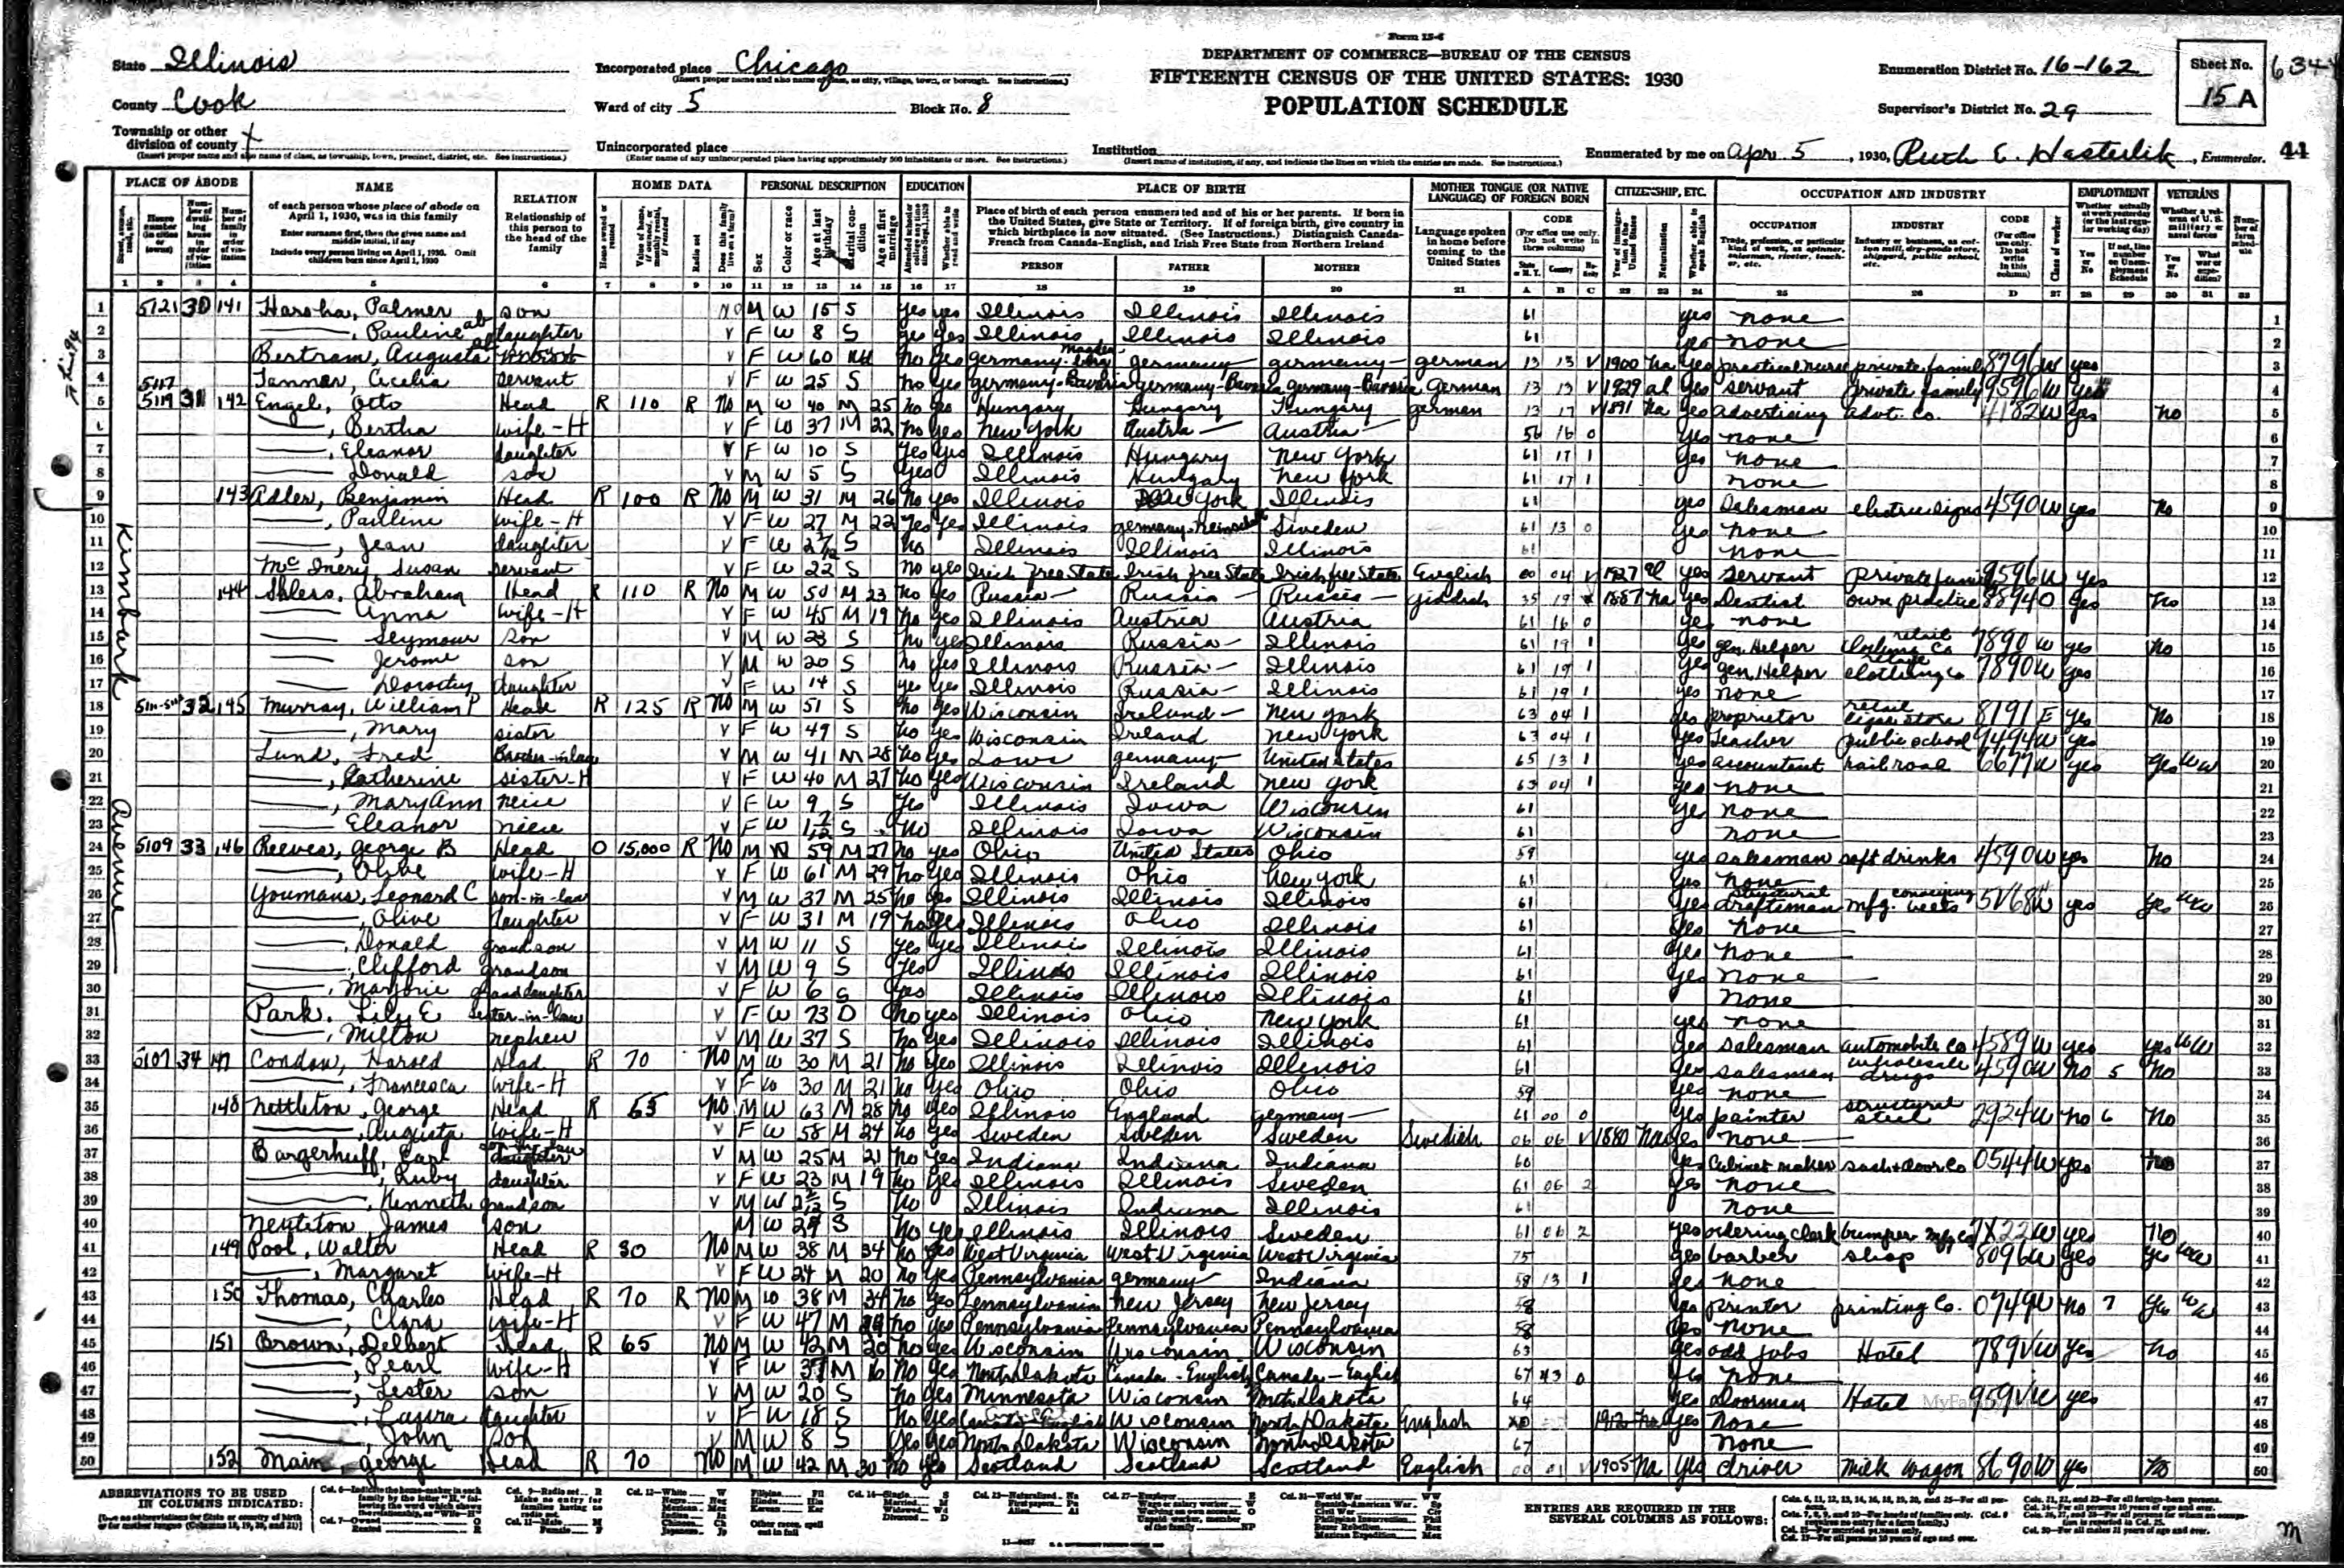 1930 US census Benjamin Adler family